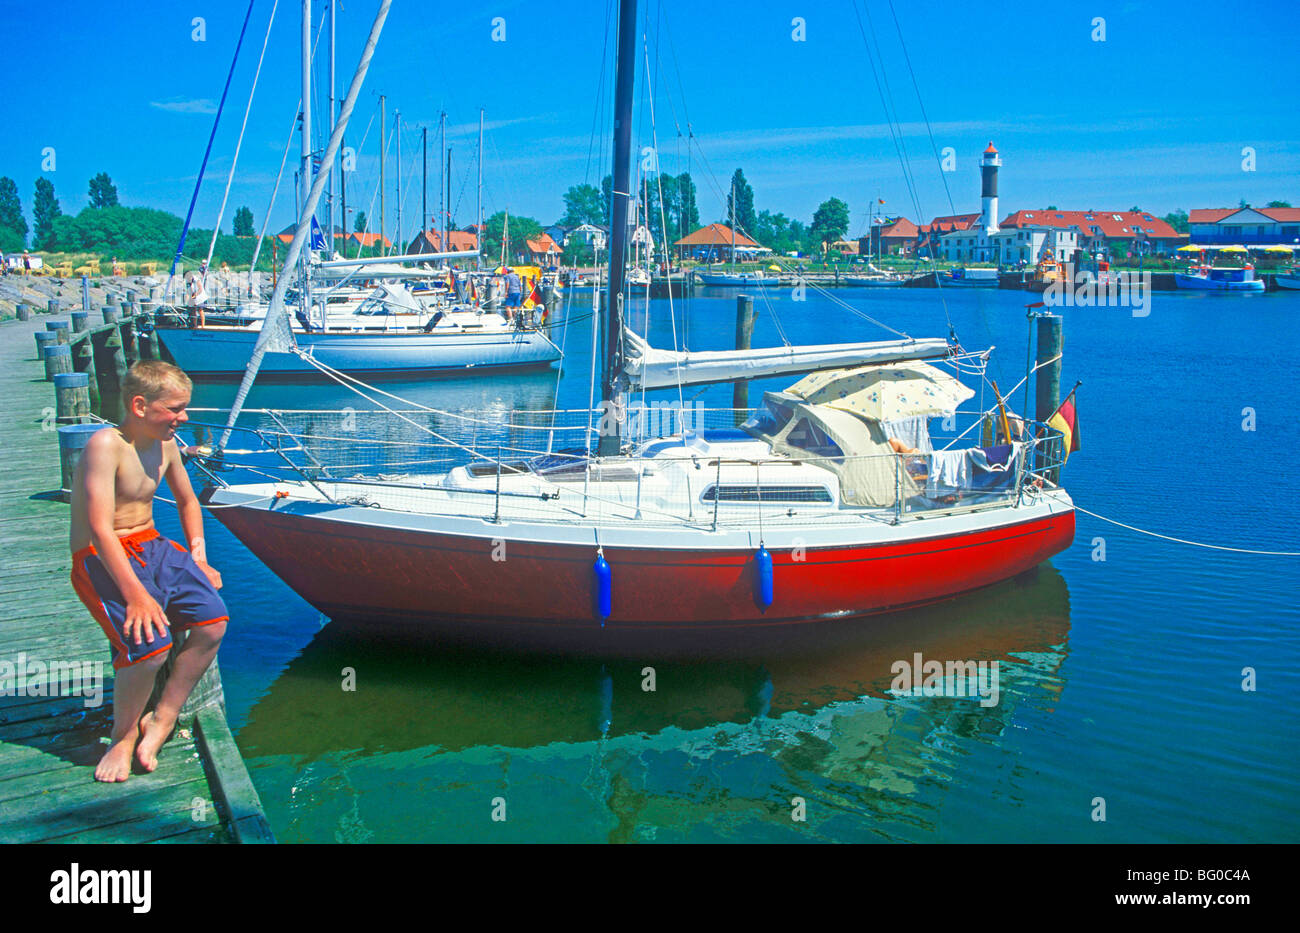 Porto di Timmendorf, Poel isola, Mar Baltico, Meclemburgo-Pomerania Occidentale, Germania Foto Stock